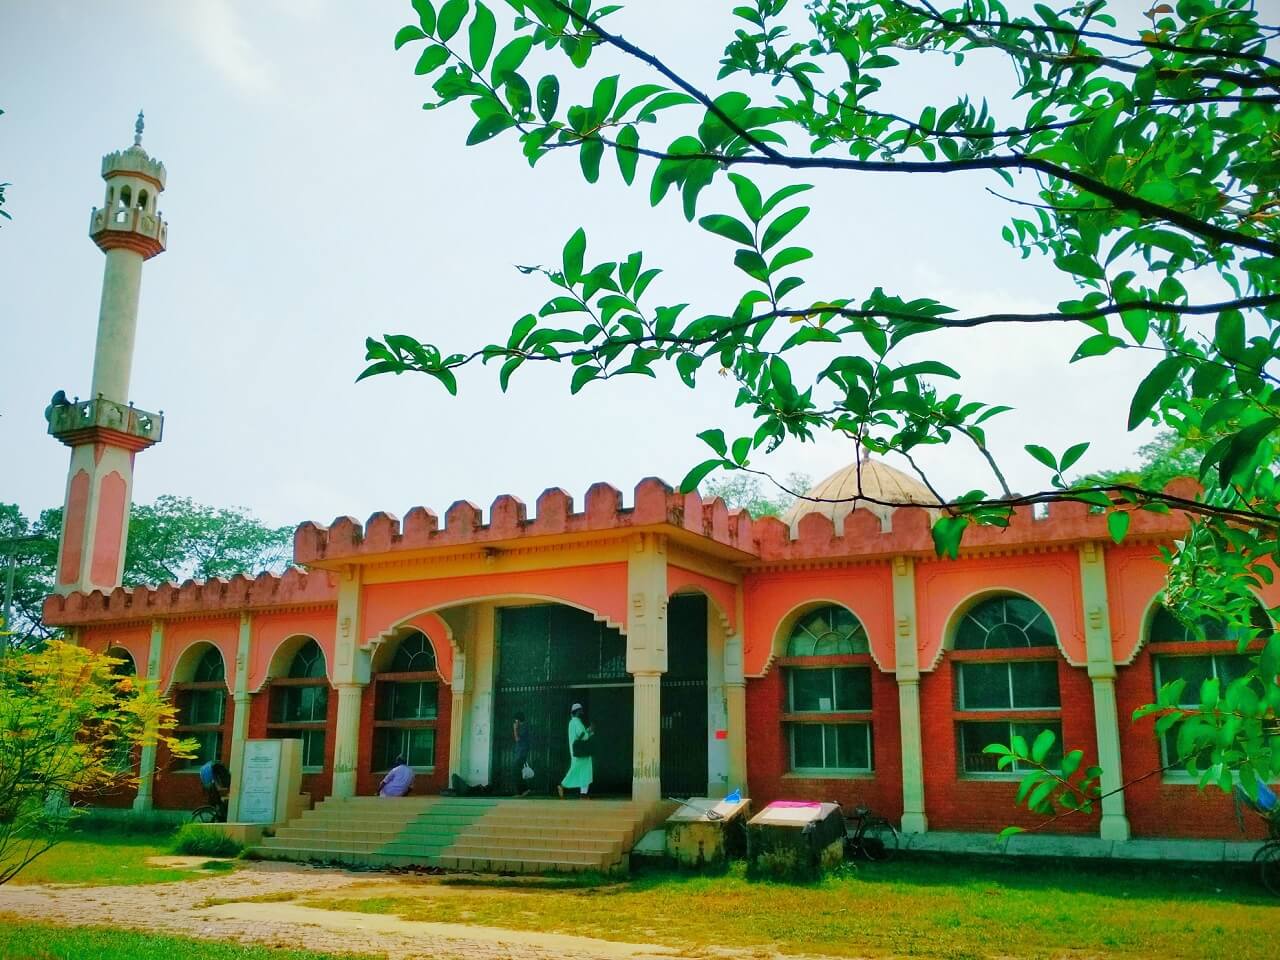 জাহাঙ্গীরনগর বিশ্ববিদ্যালয় ভ্রমণ - Goarif